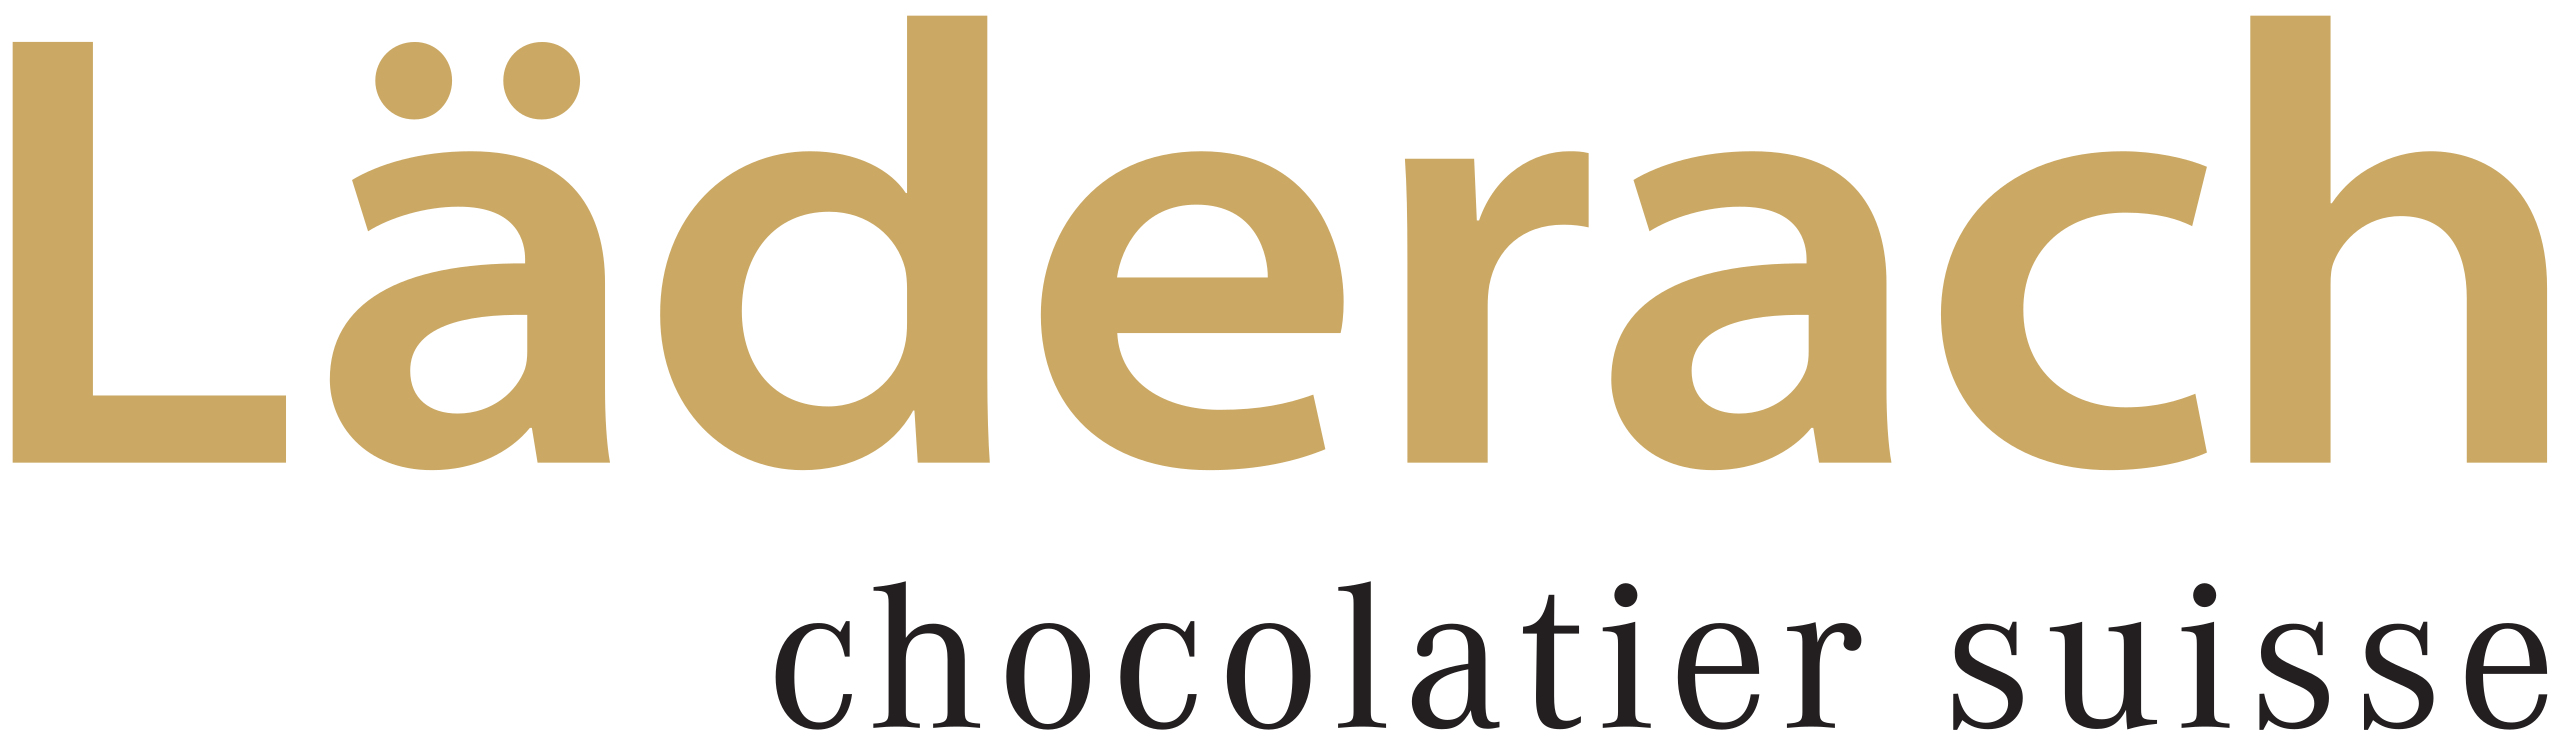 Läderach Chocolate logo